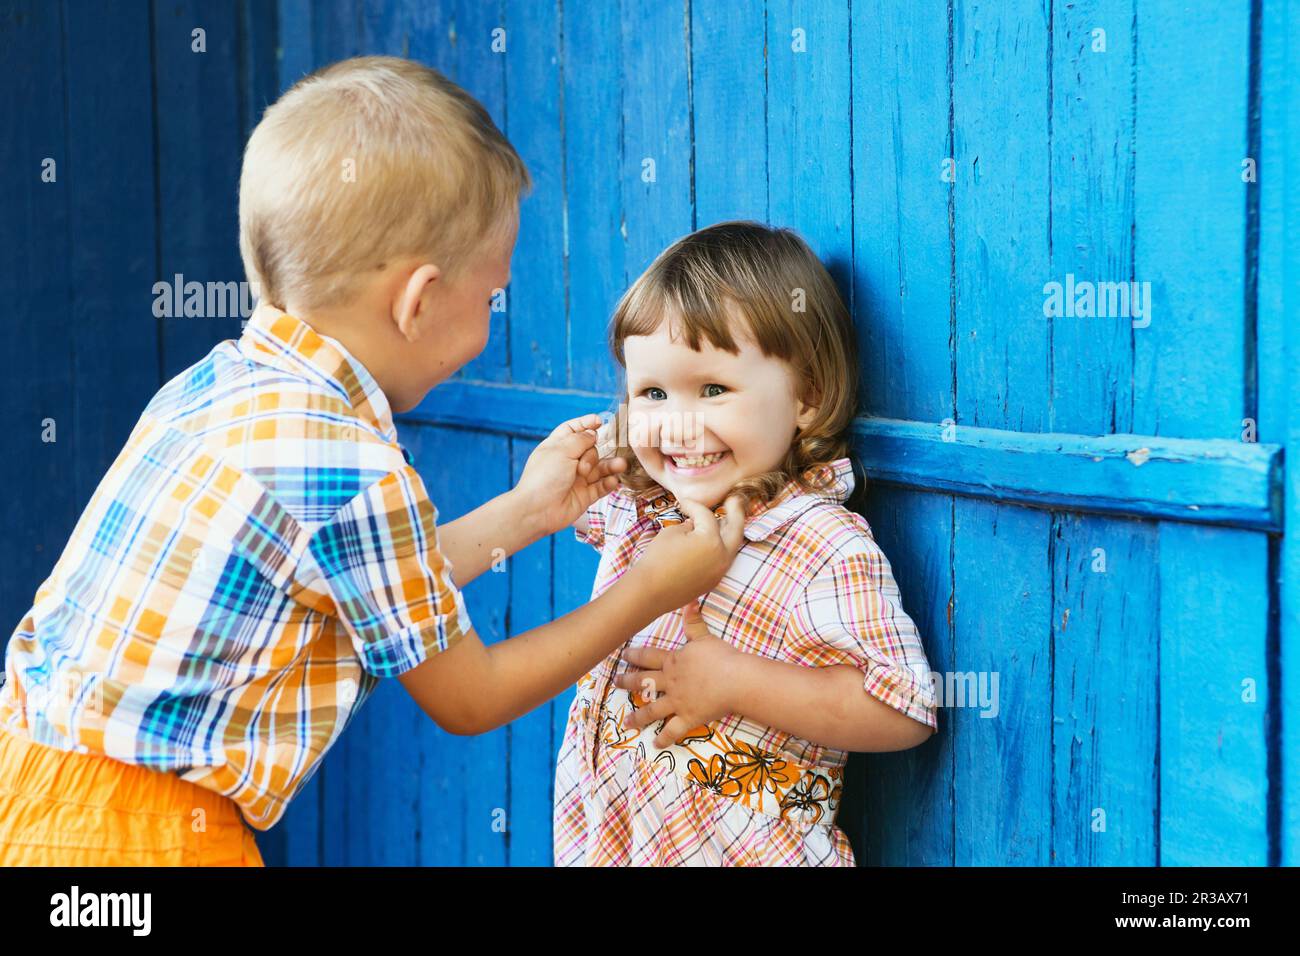 Bruder kitzelt ihre Schwester. Kleine Kinder spielen gegen blaue Holzwand Stockfoto